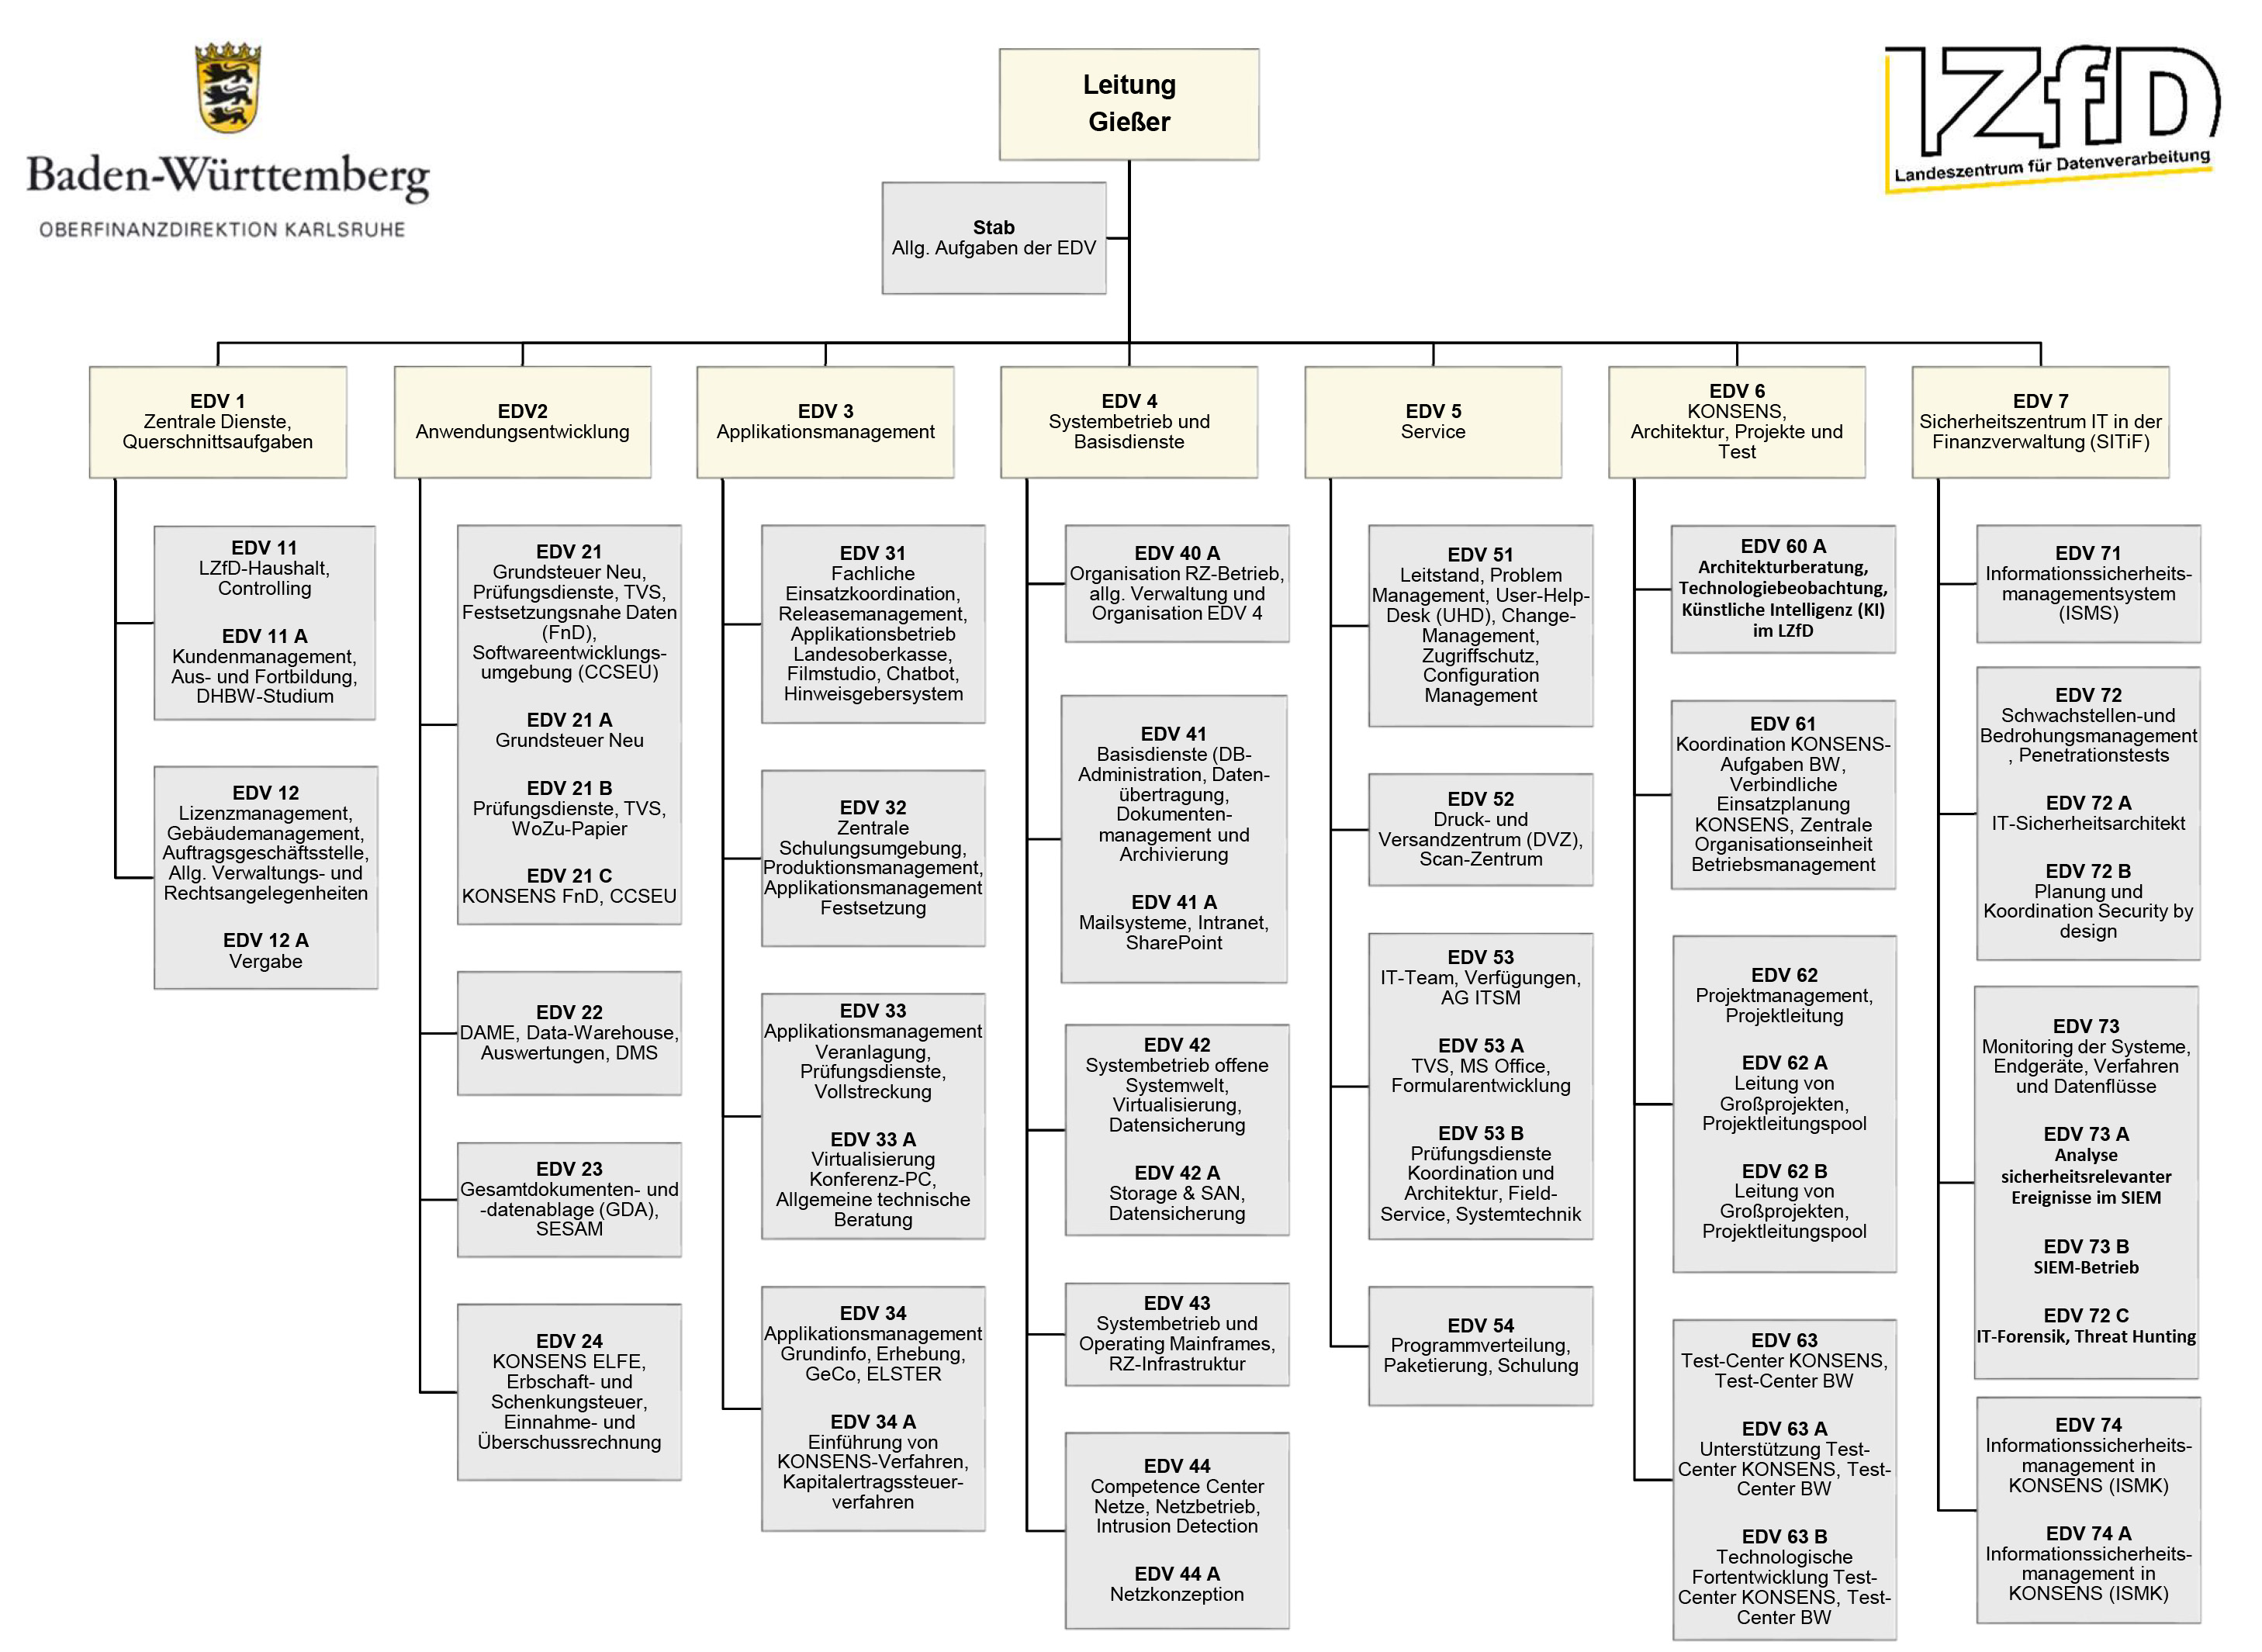 Organisationsstruktur der Abteilung Datenverarbeitung